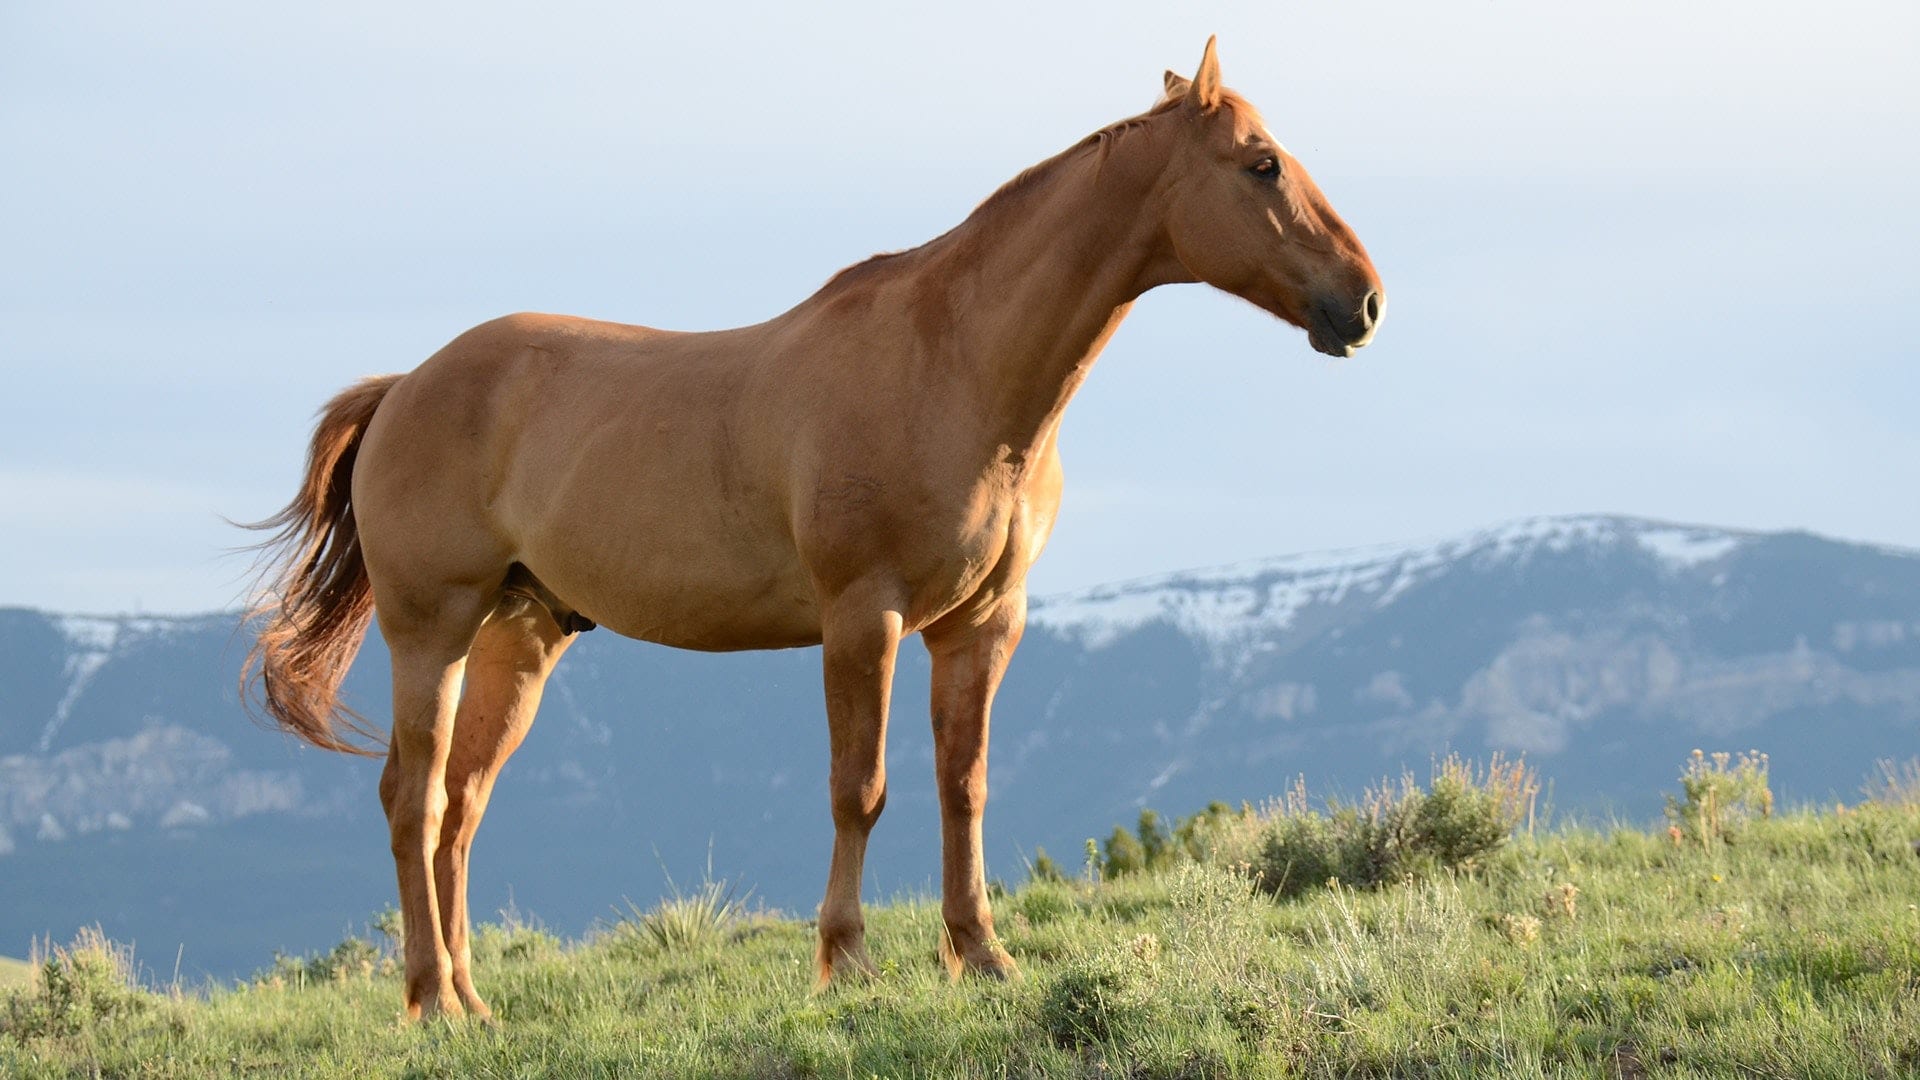 Horse in open field